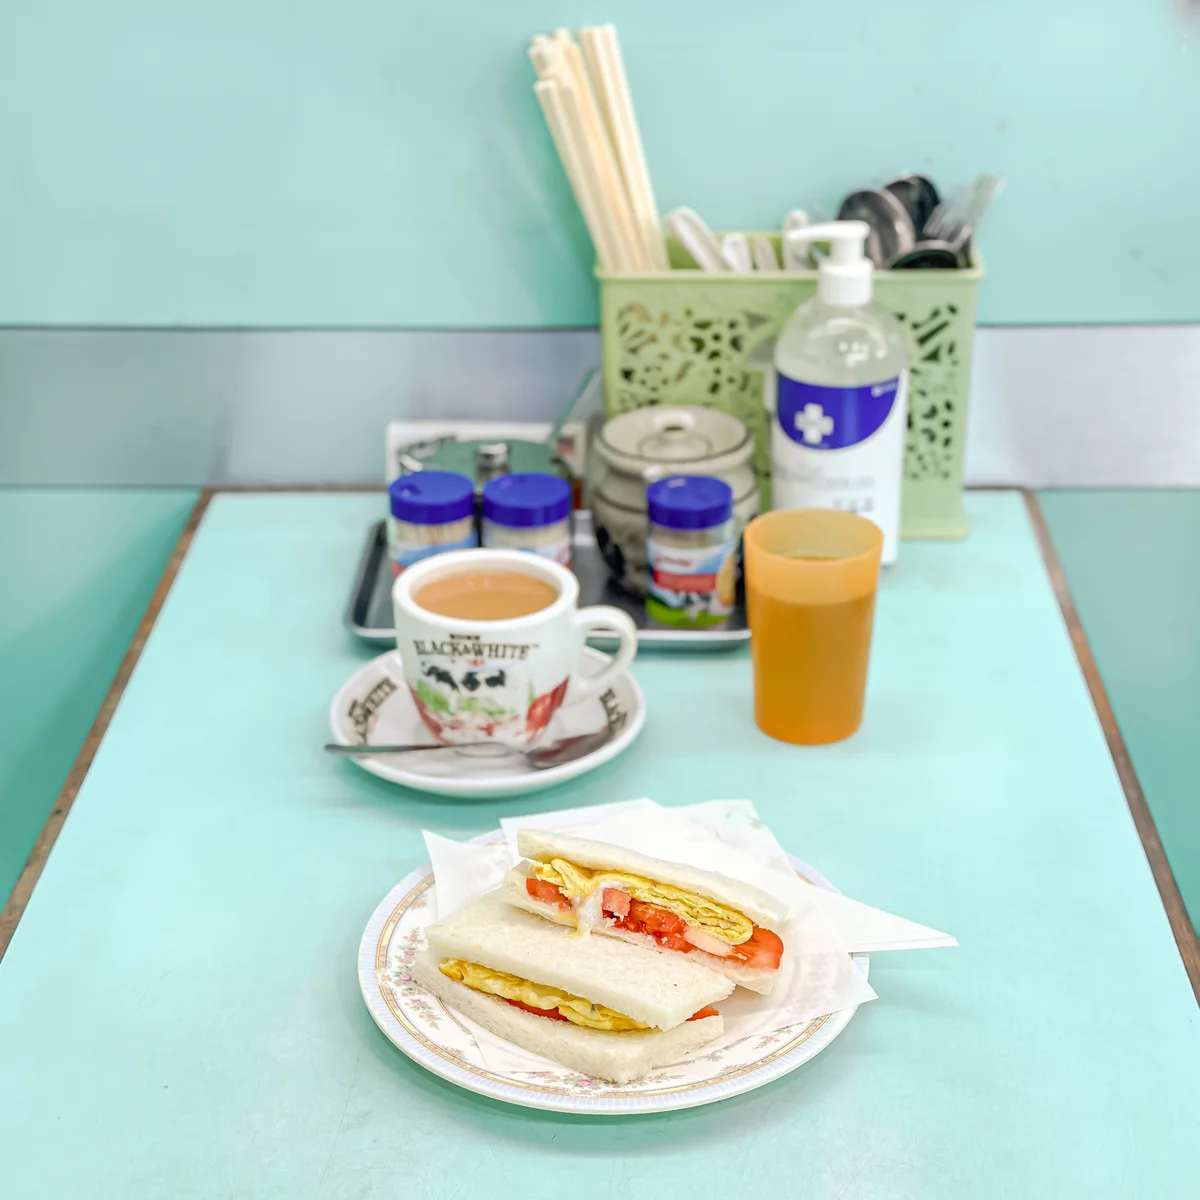 洞天冰室の奶茶とエッグトマトサンドイッチ